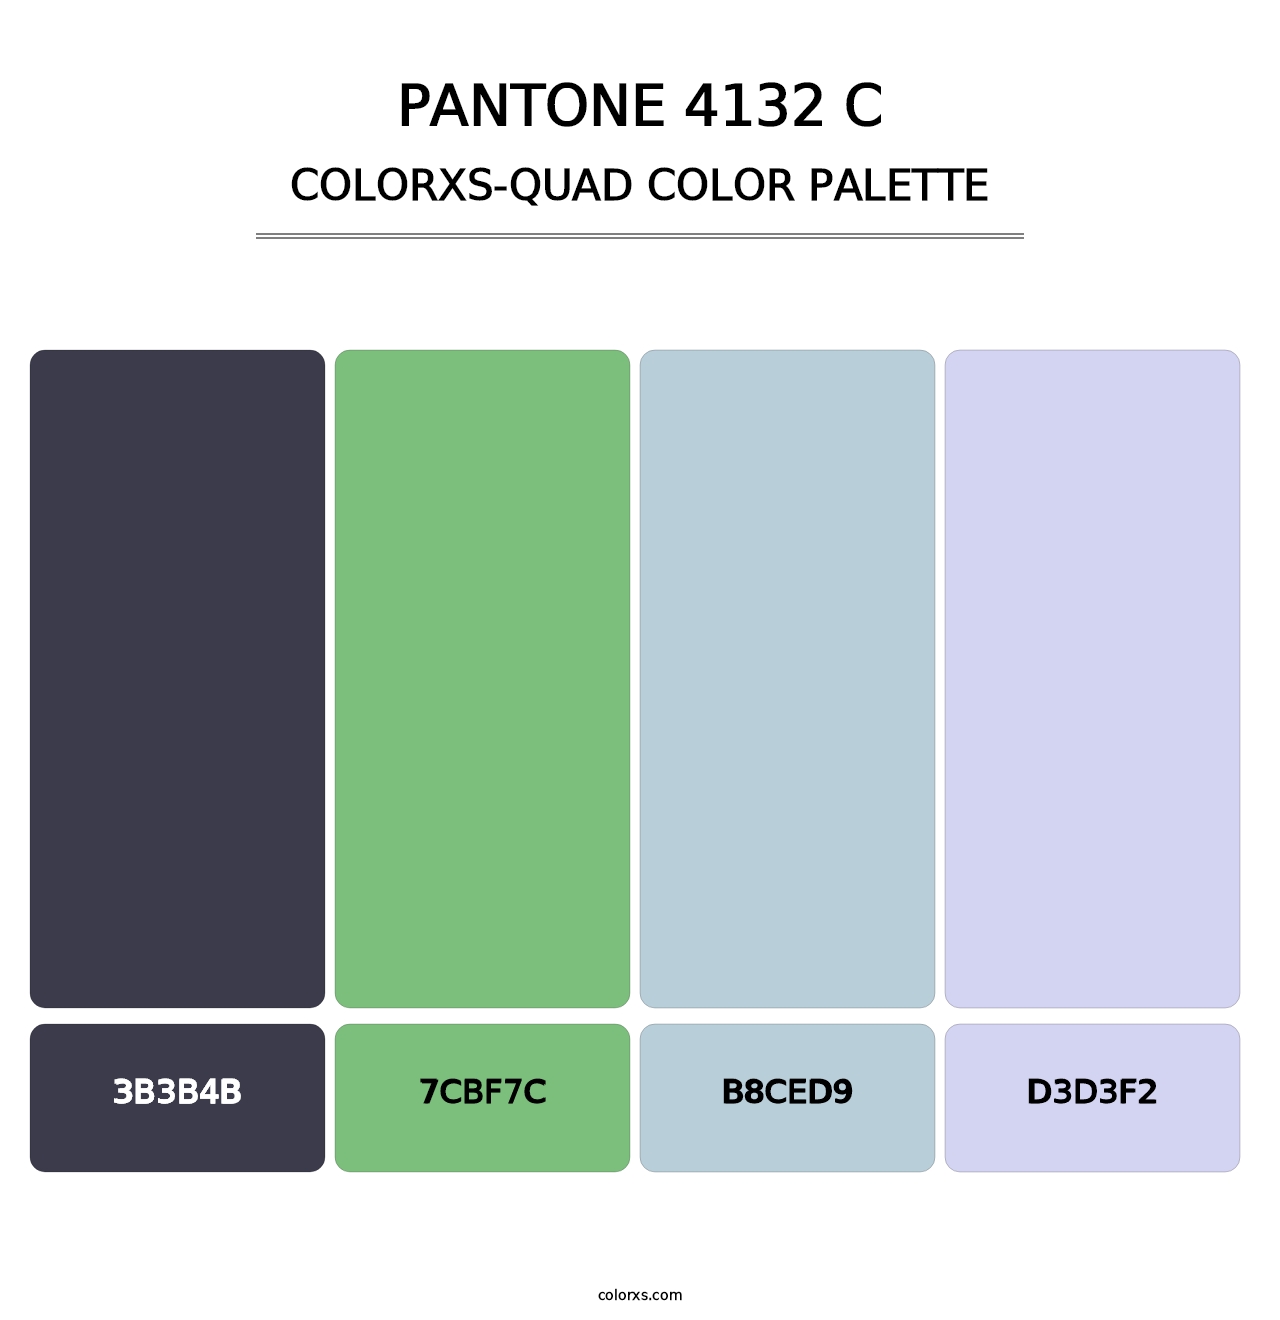 PANTONE 4132 C - Colorxs Quad Palette